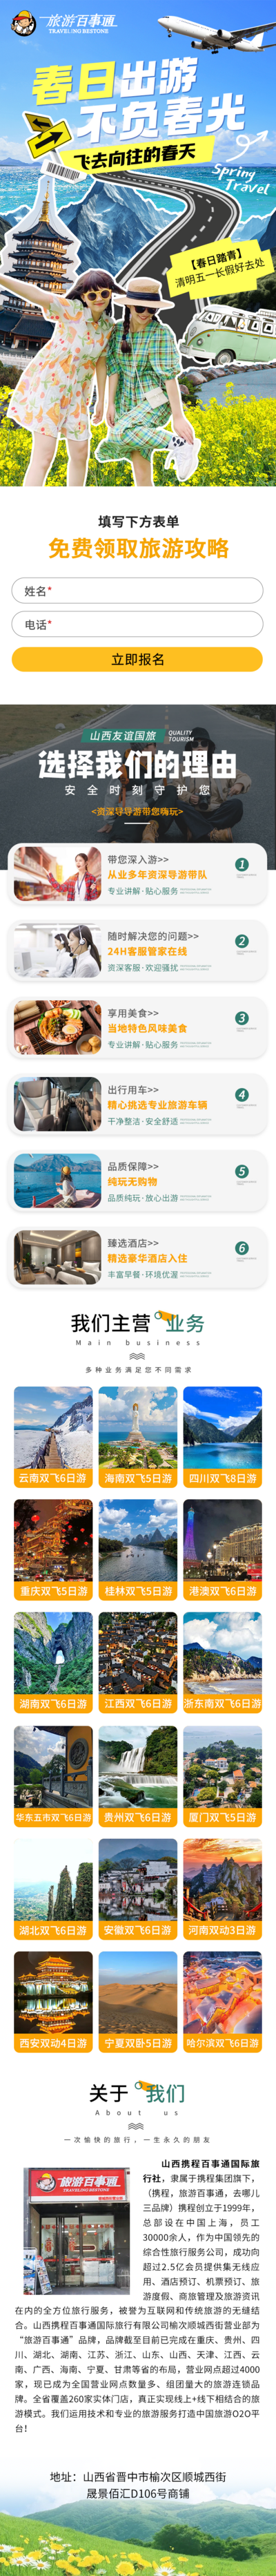 南门网 广告 海报 活动 旅游 旅行 长图 专题 劳动节 五一 出游季